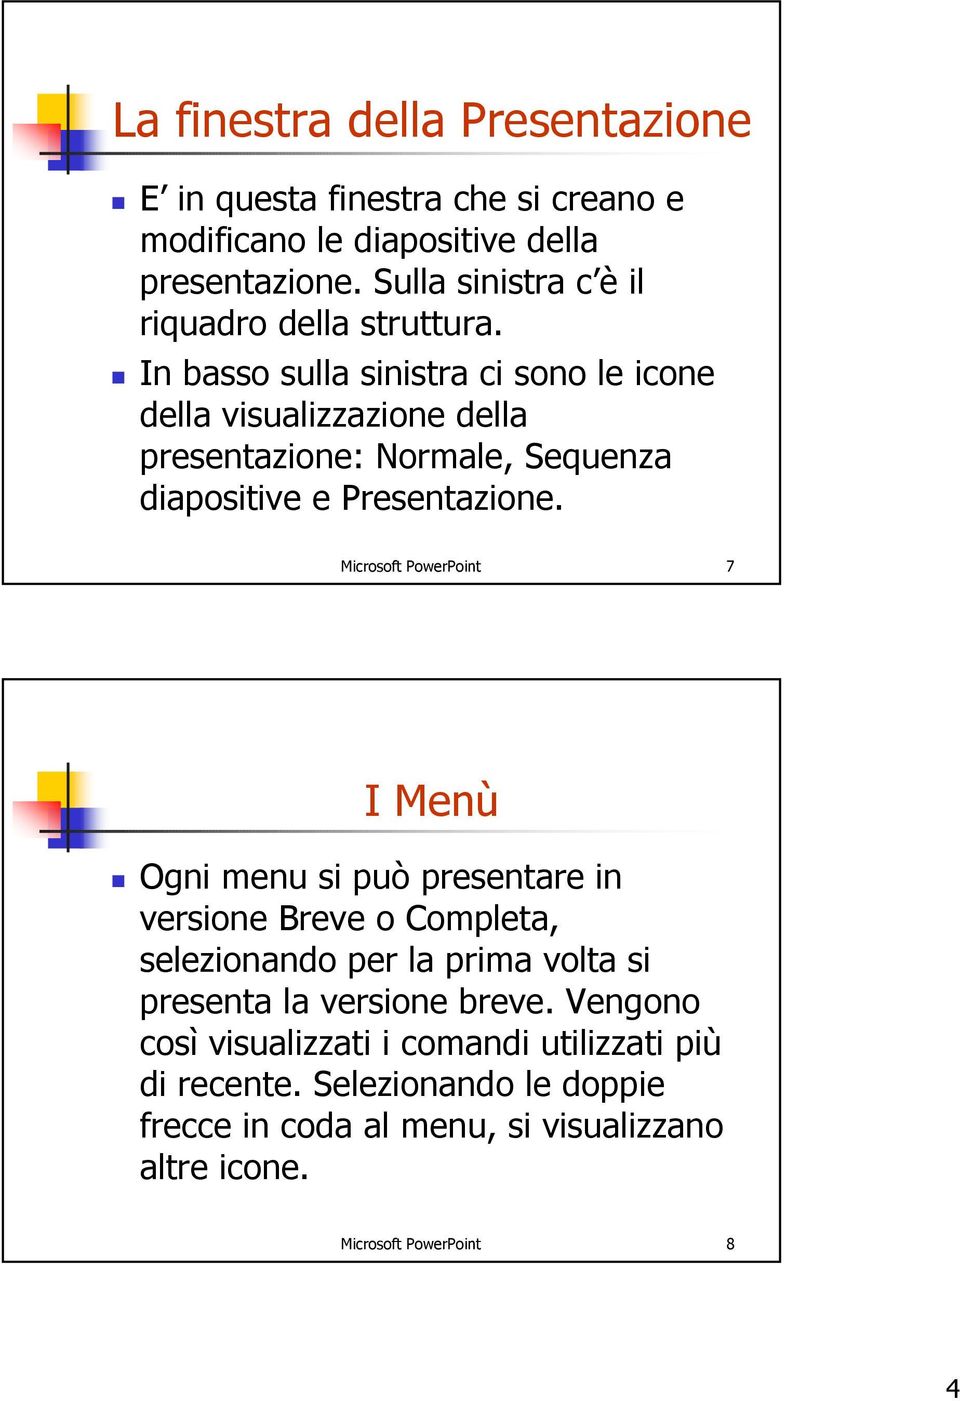 In basso sulla sinistra ci sono le icone della visualizzazione della presentazione: Normale, Sequenza diapositive e Presentazione.